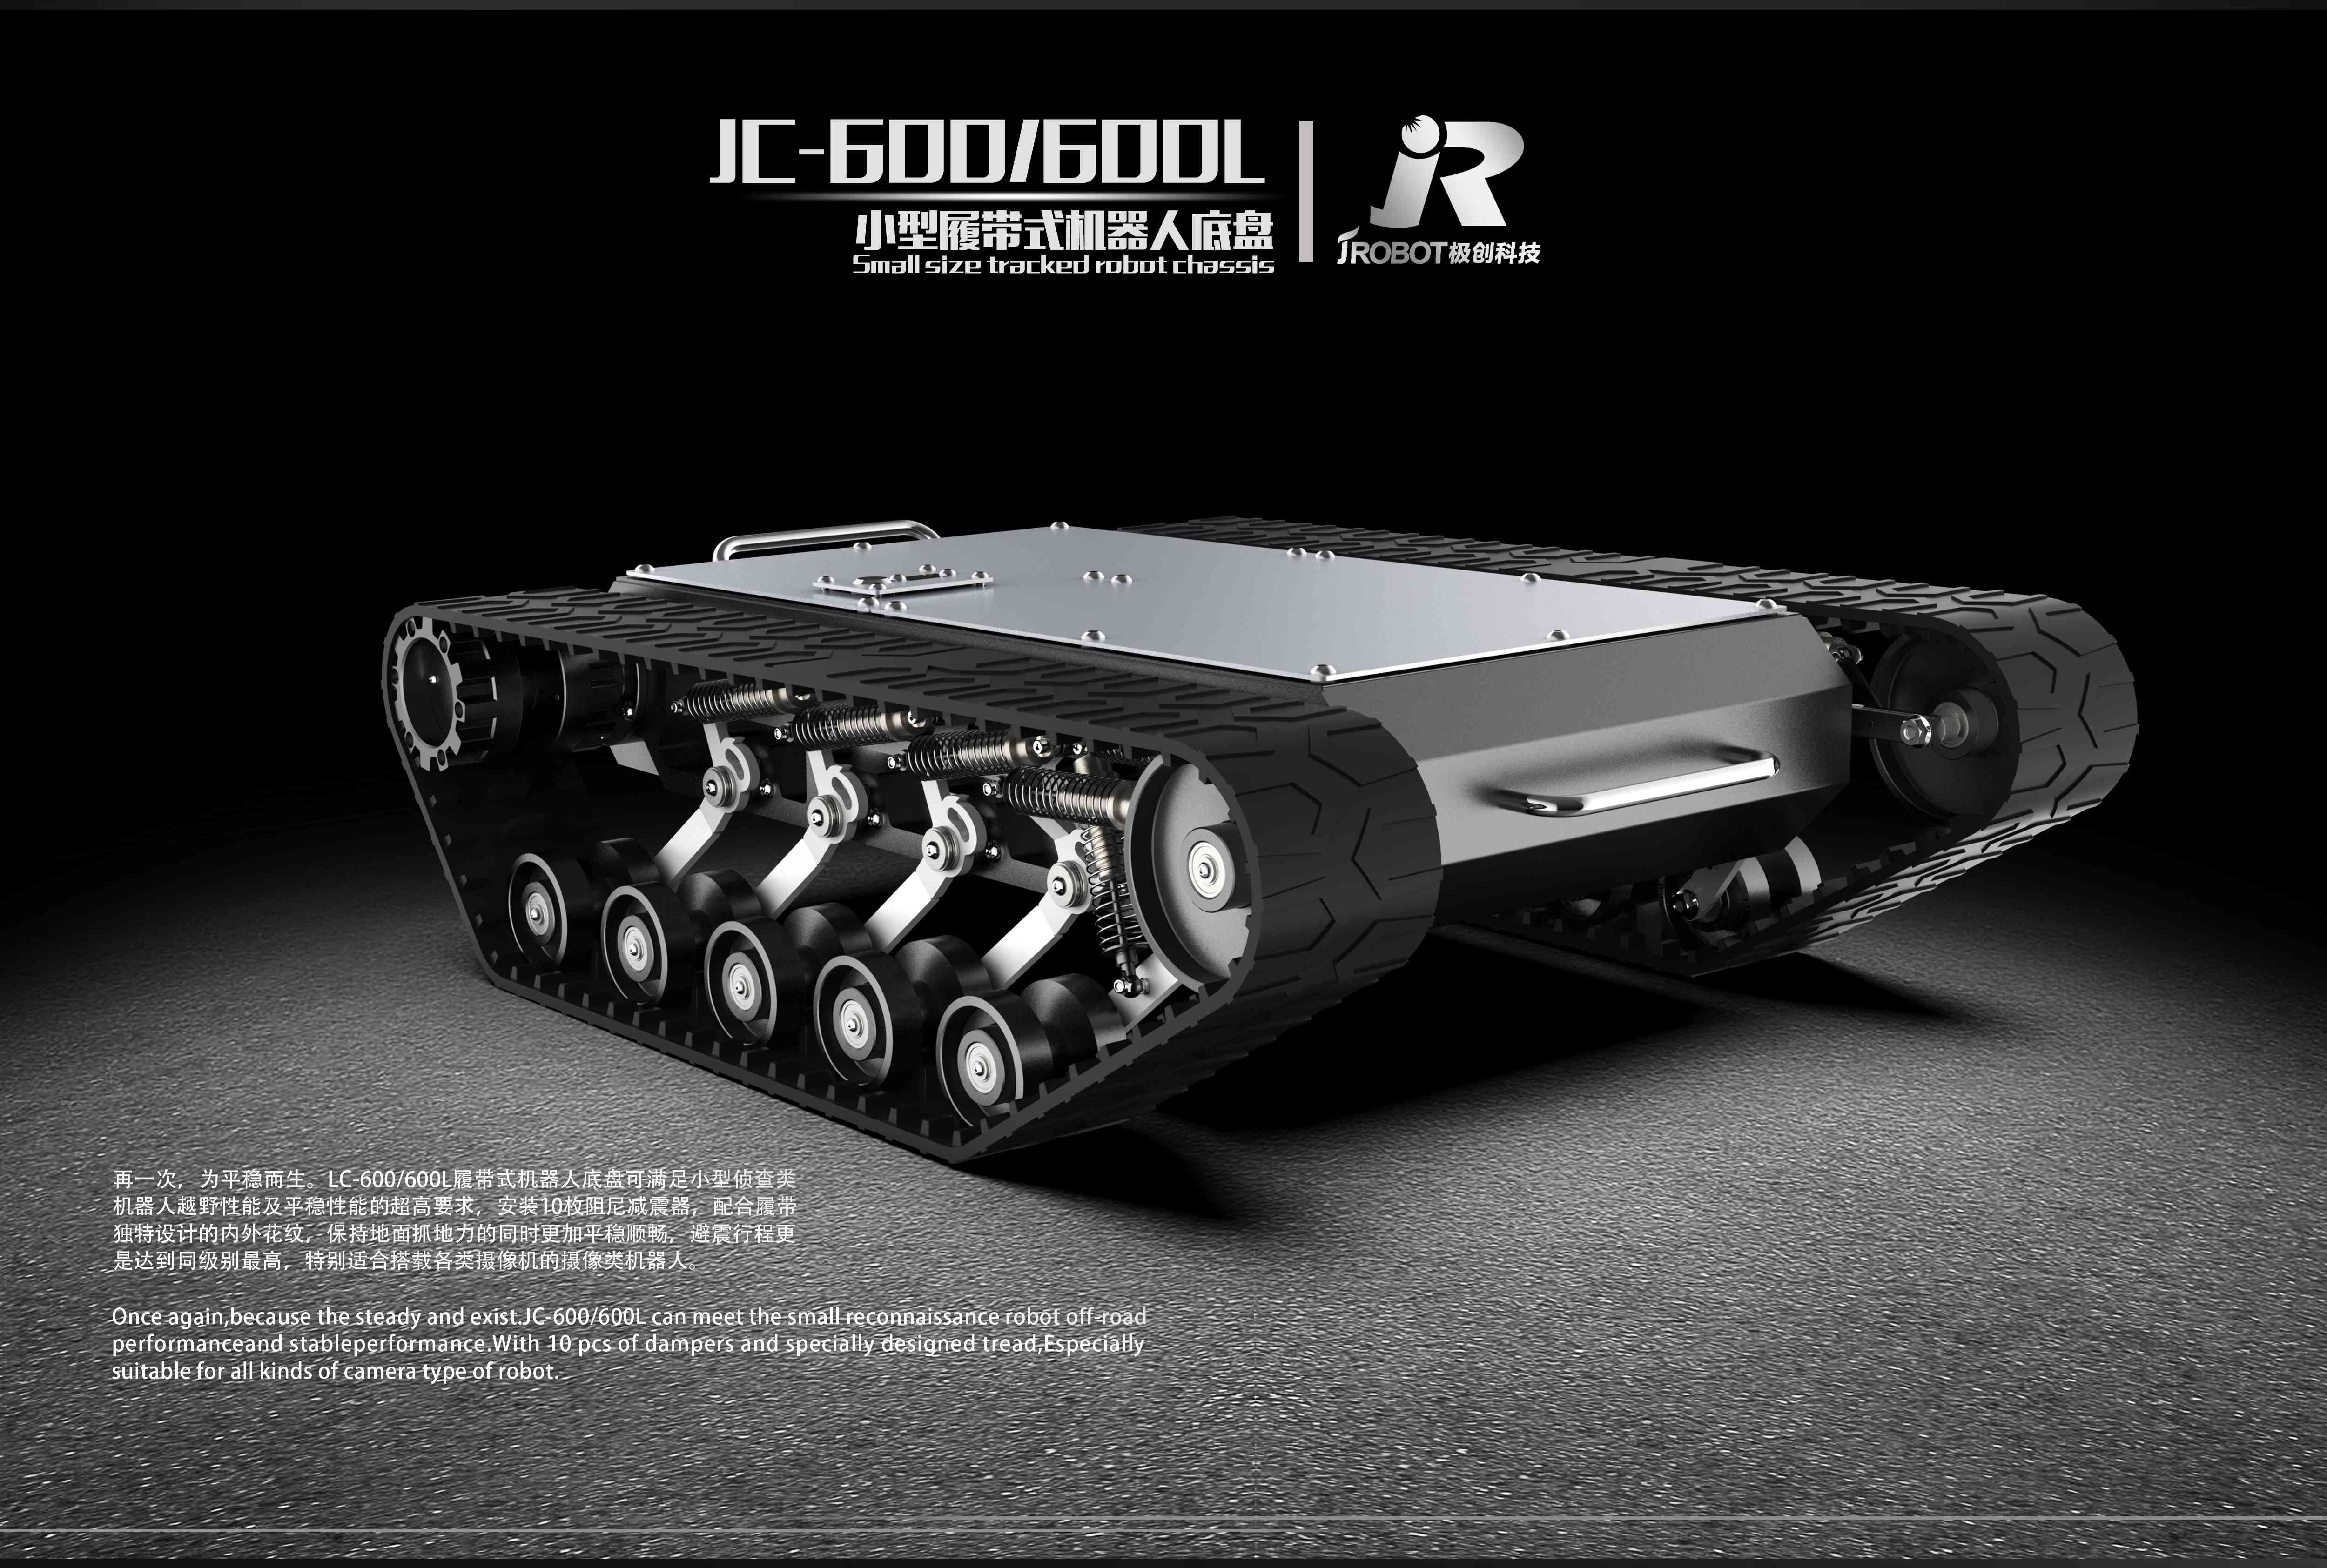 JC-600&600L海报_compressed.jpg